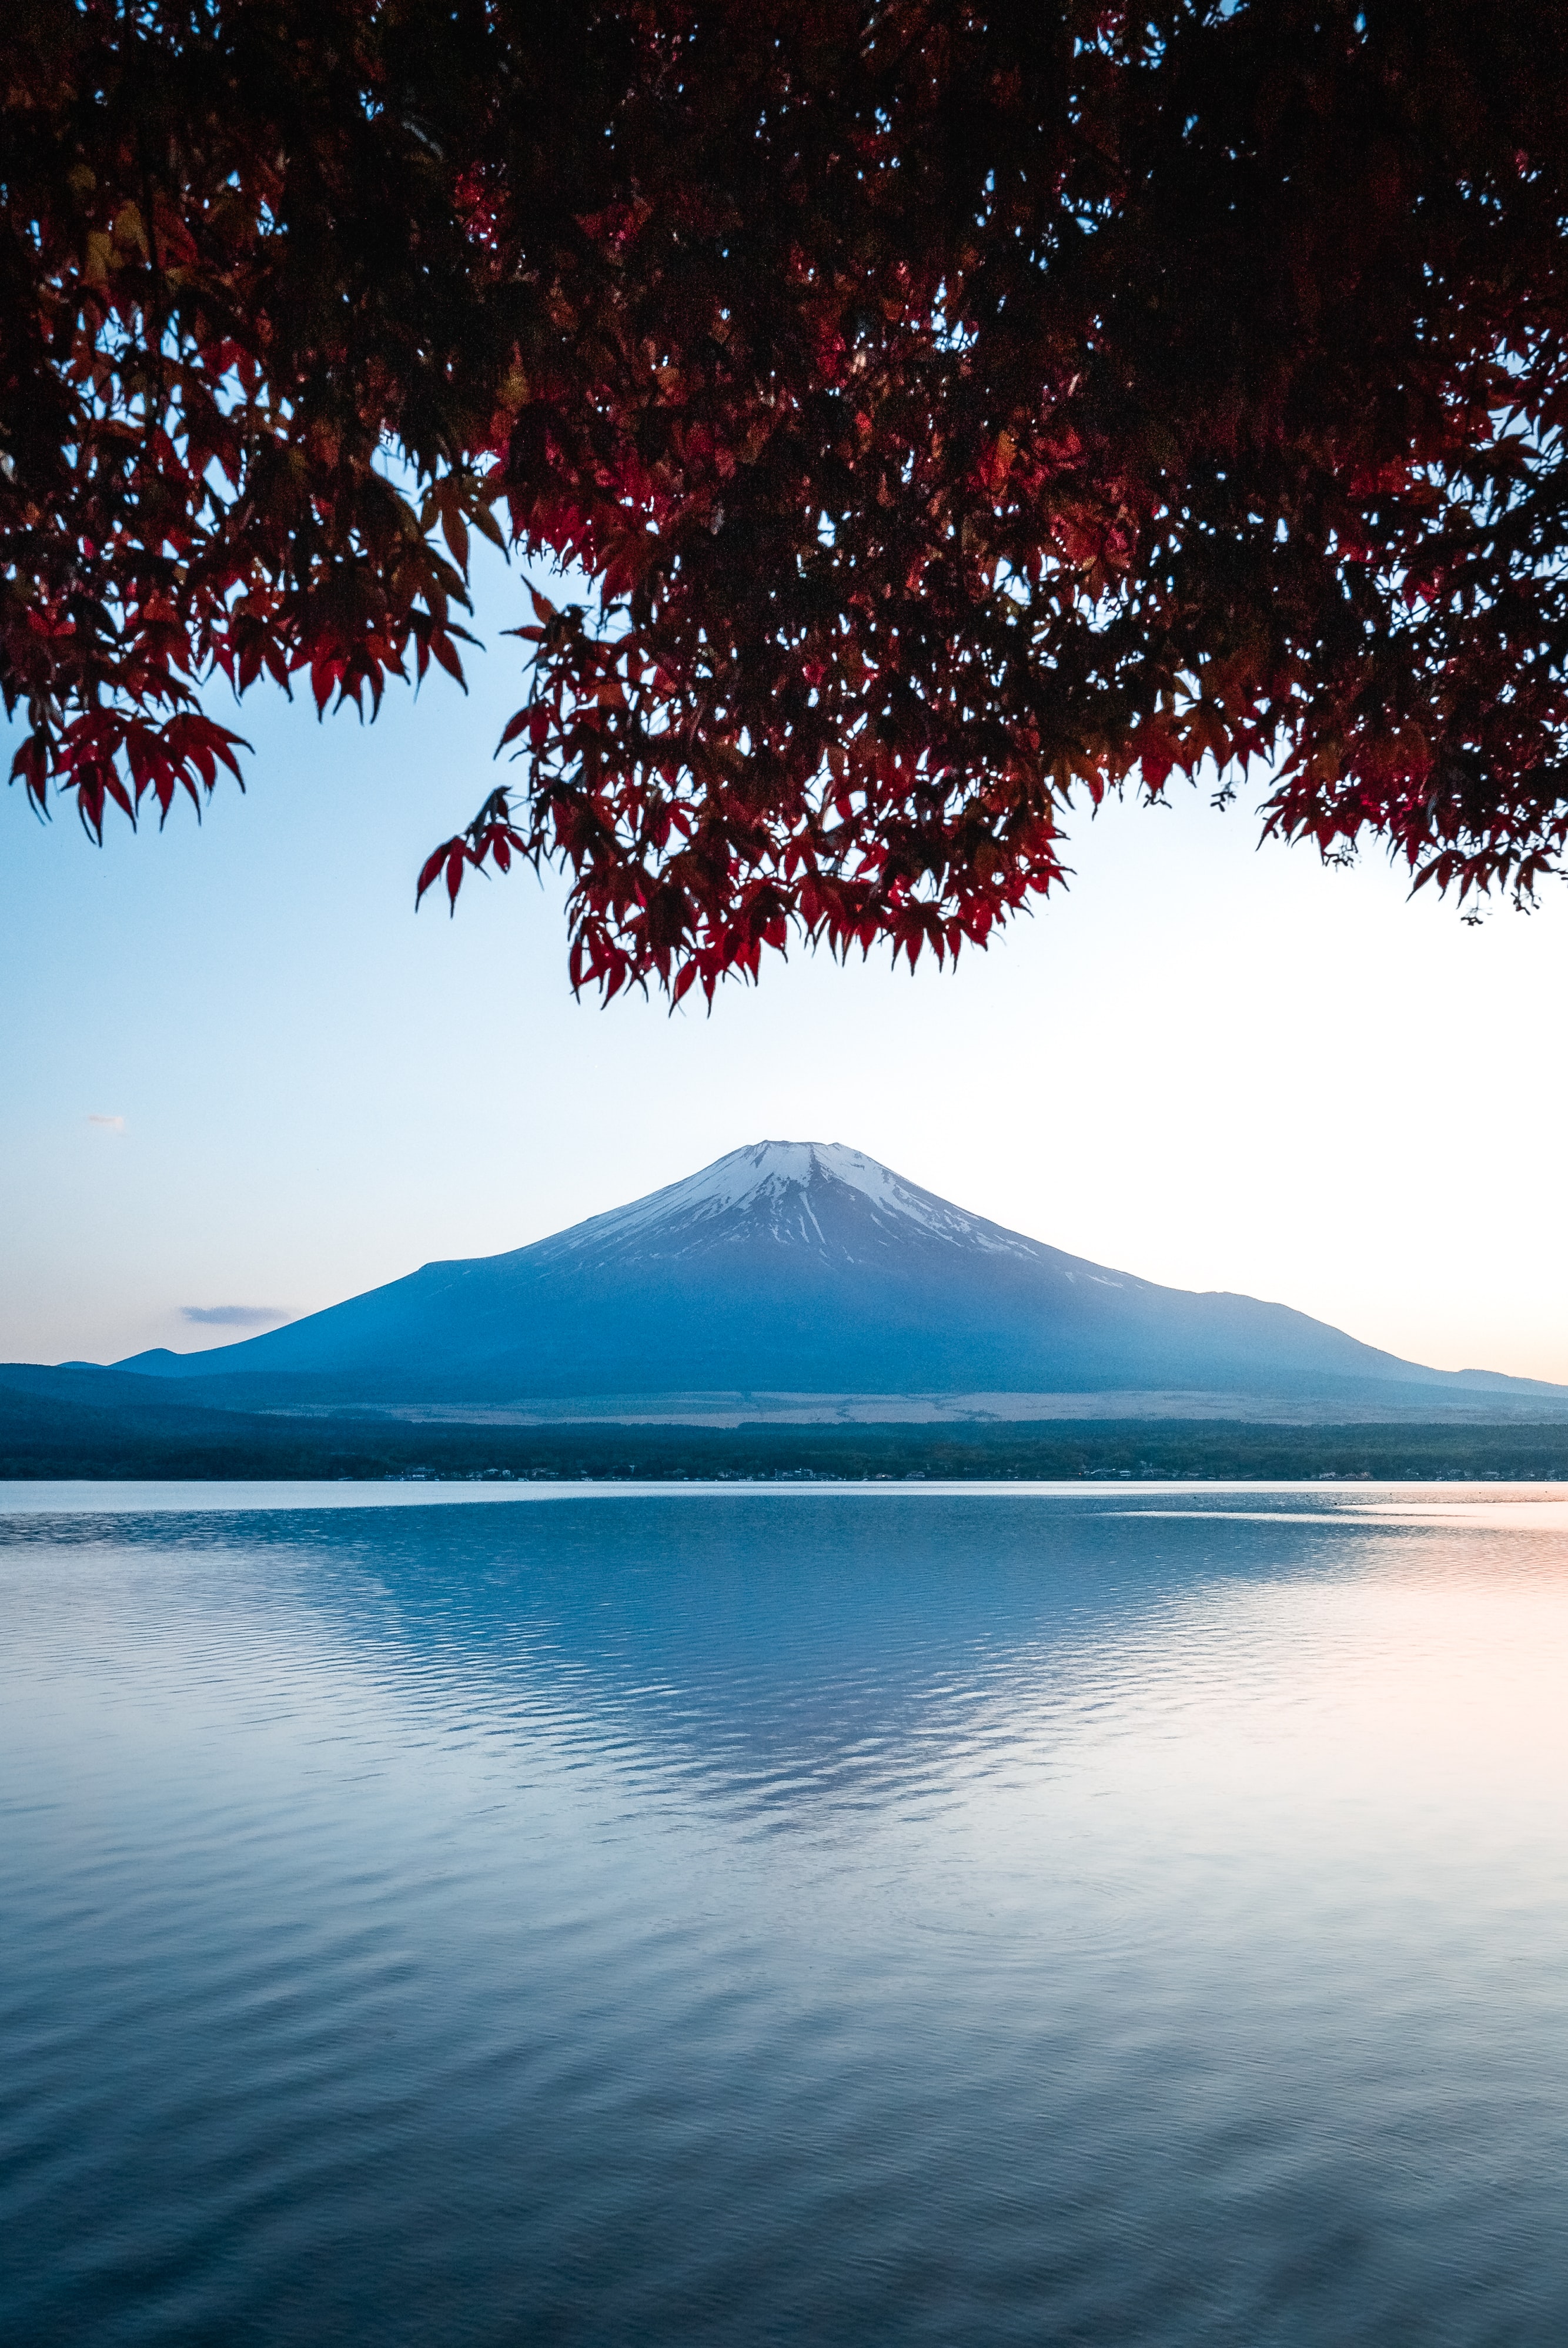 Monte Fuji la montaña sagrada de Japón